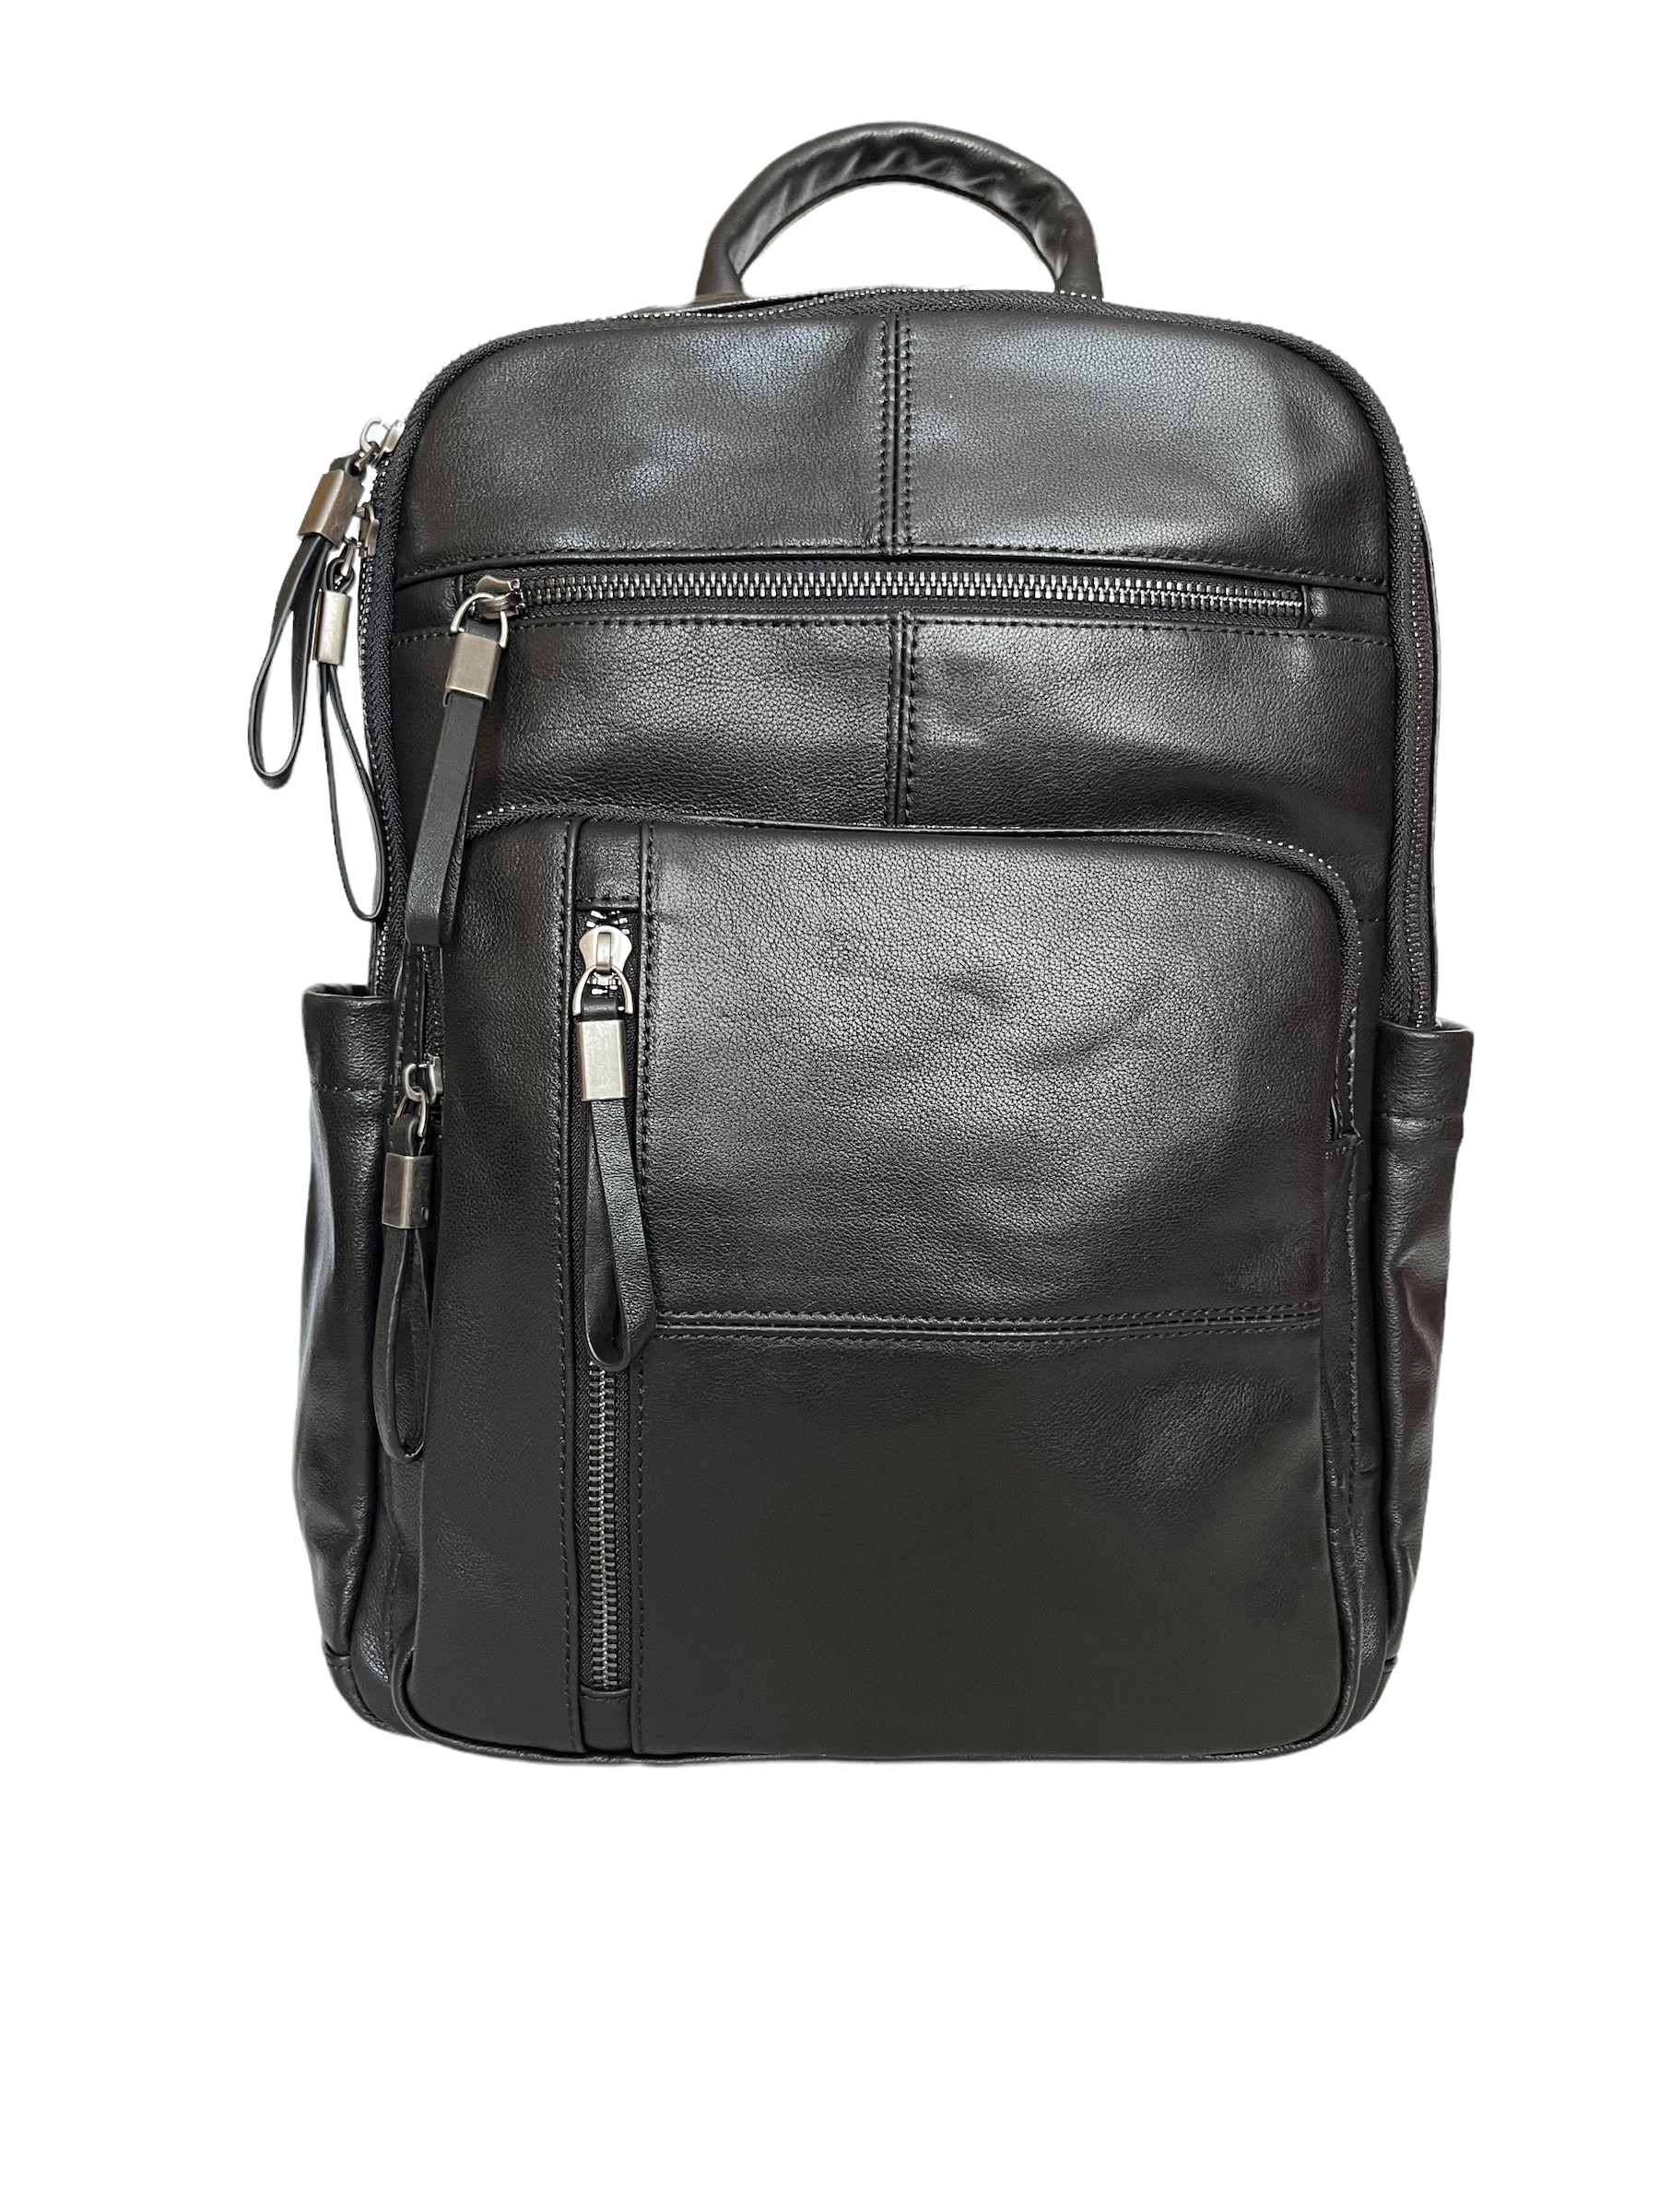 Рюкзак мужской BRUONO 8221-RM черный, 38x36x13 см